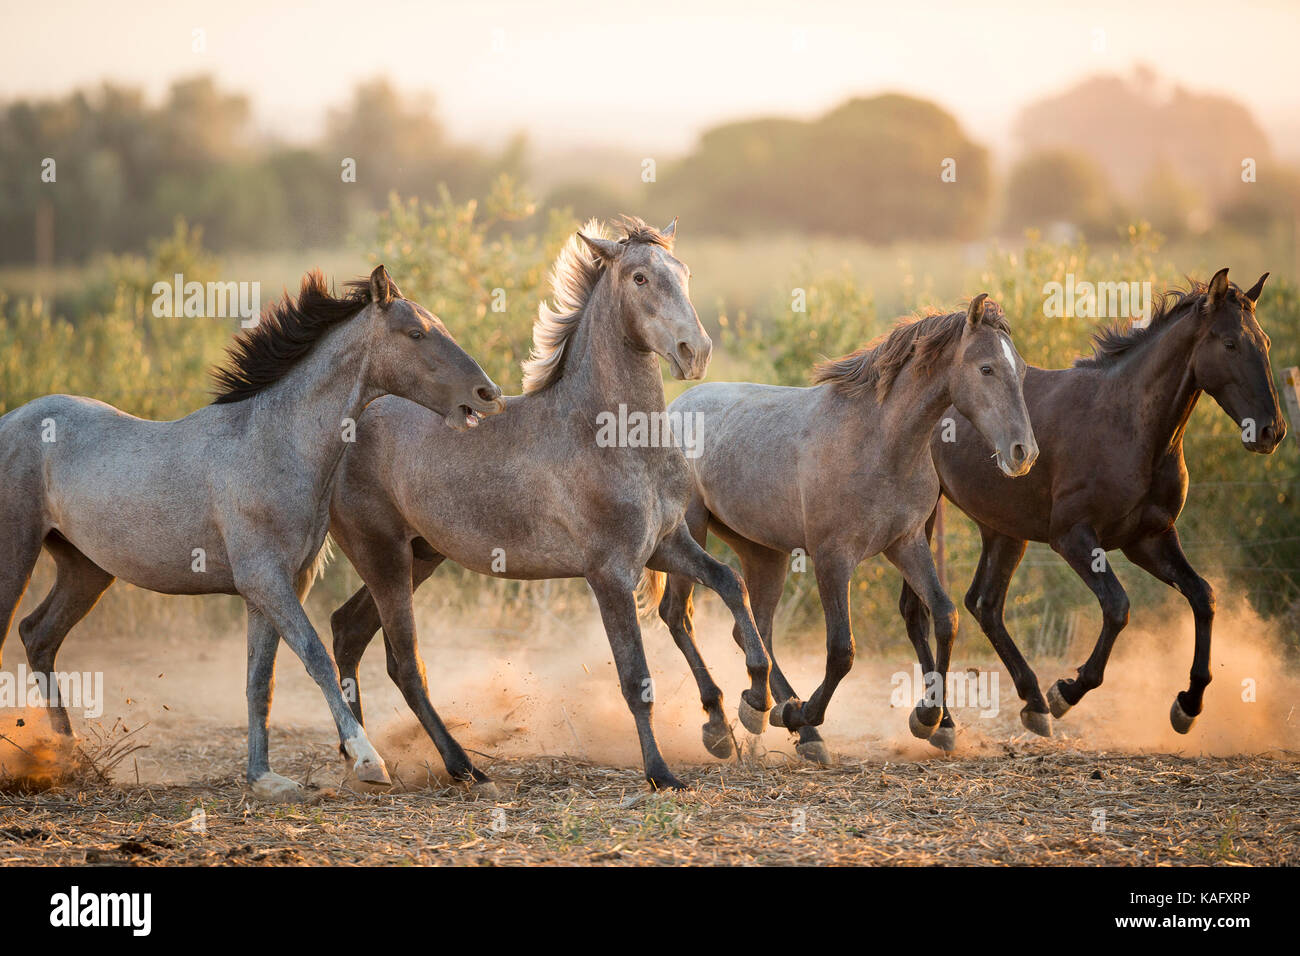 Reine Spanische Pferd, Andalusische. Vier jugendliche Hengste gallopieren auf staubigen Boden. Spanien Stockfoto